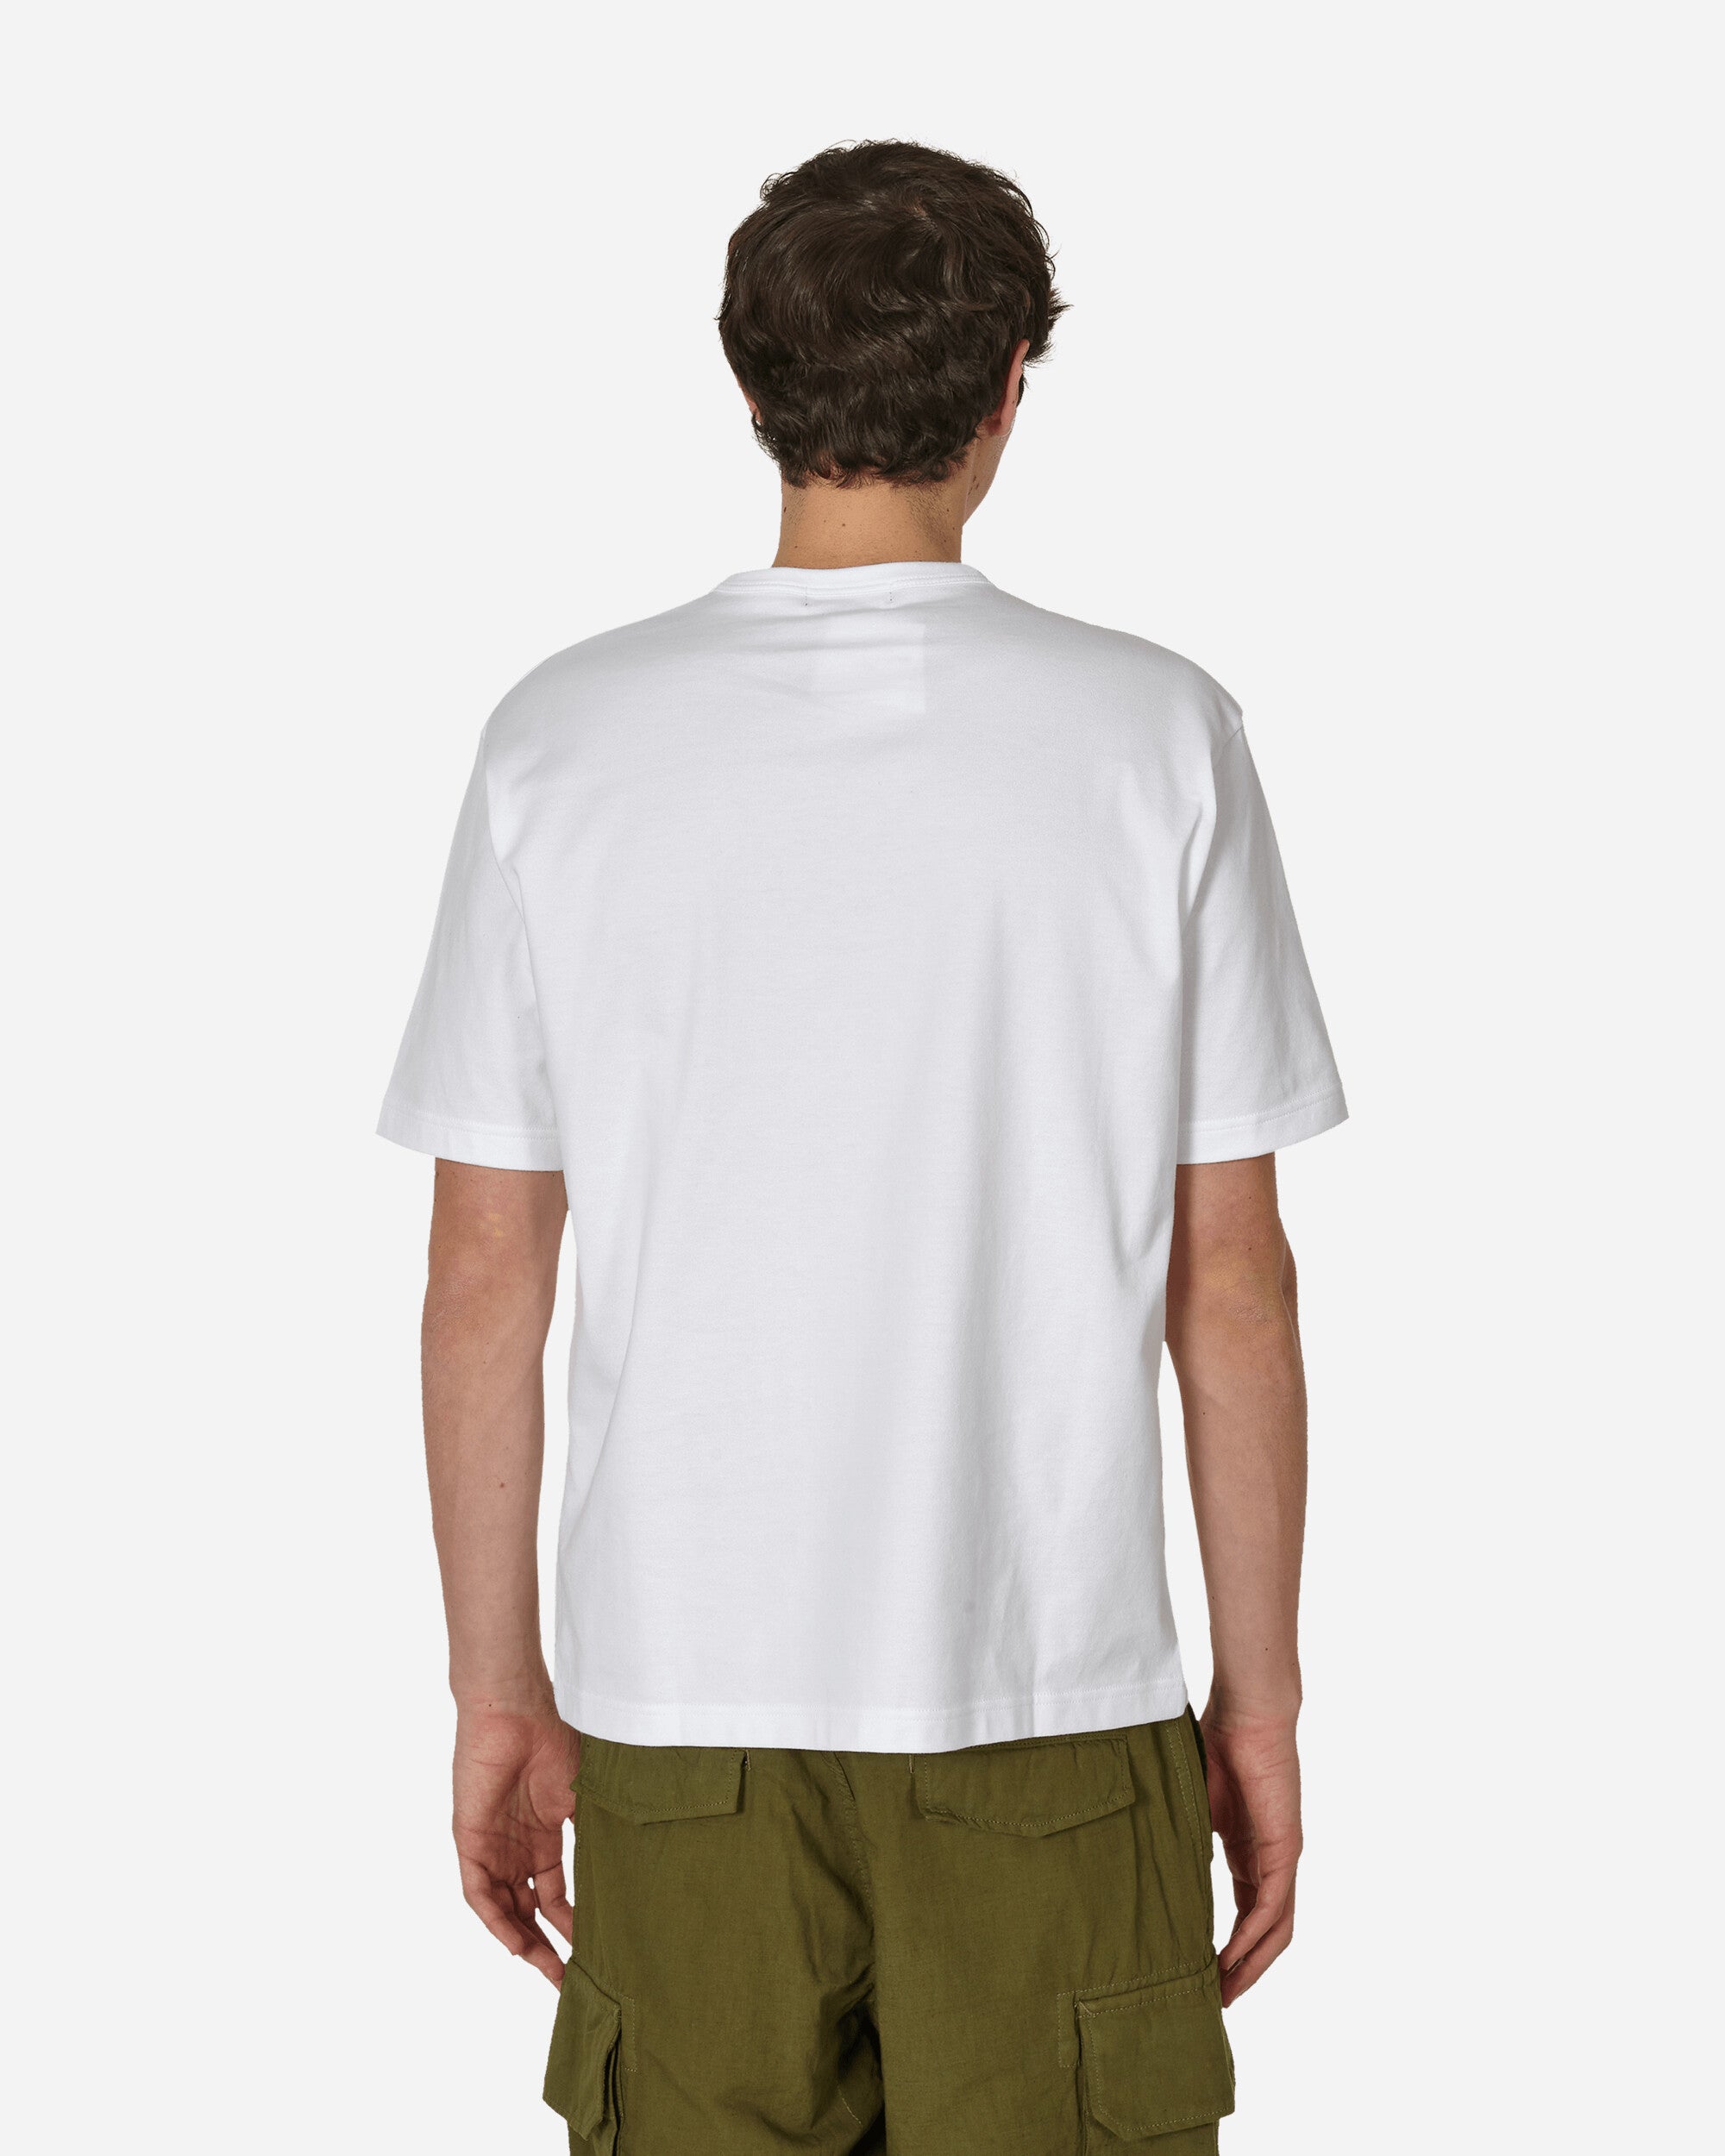 Comme Des Garçons Homme Men'S T-Shirt White T-Shirts Shortsleeve HM-T103-051 2